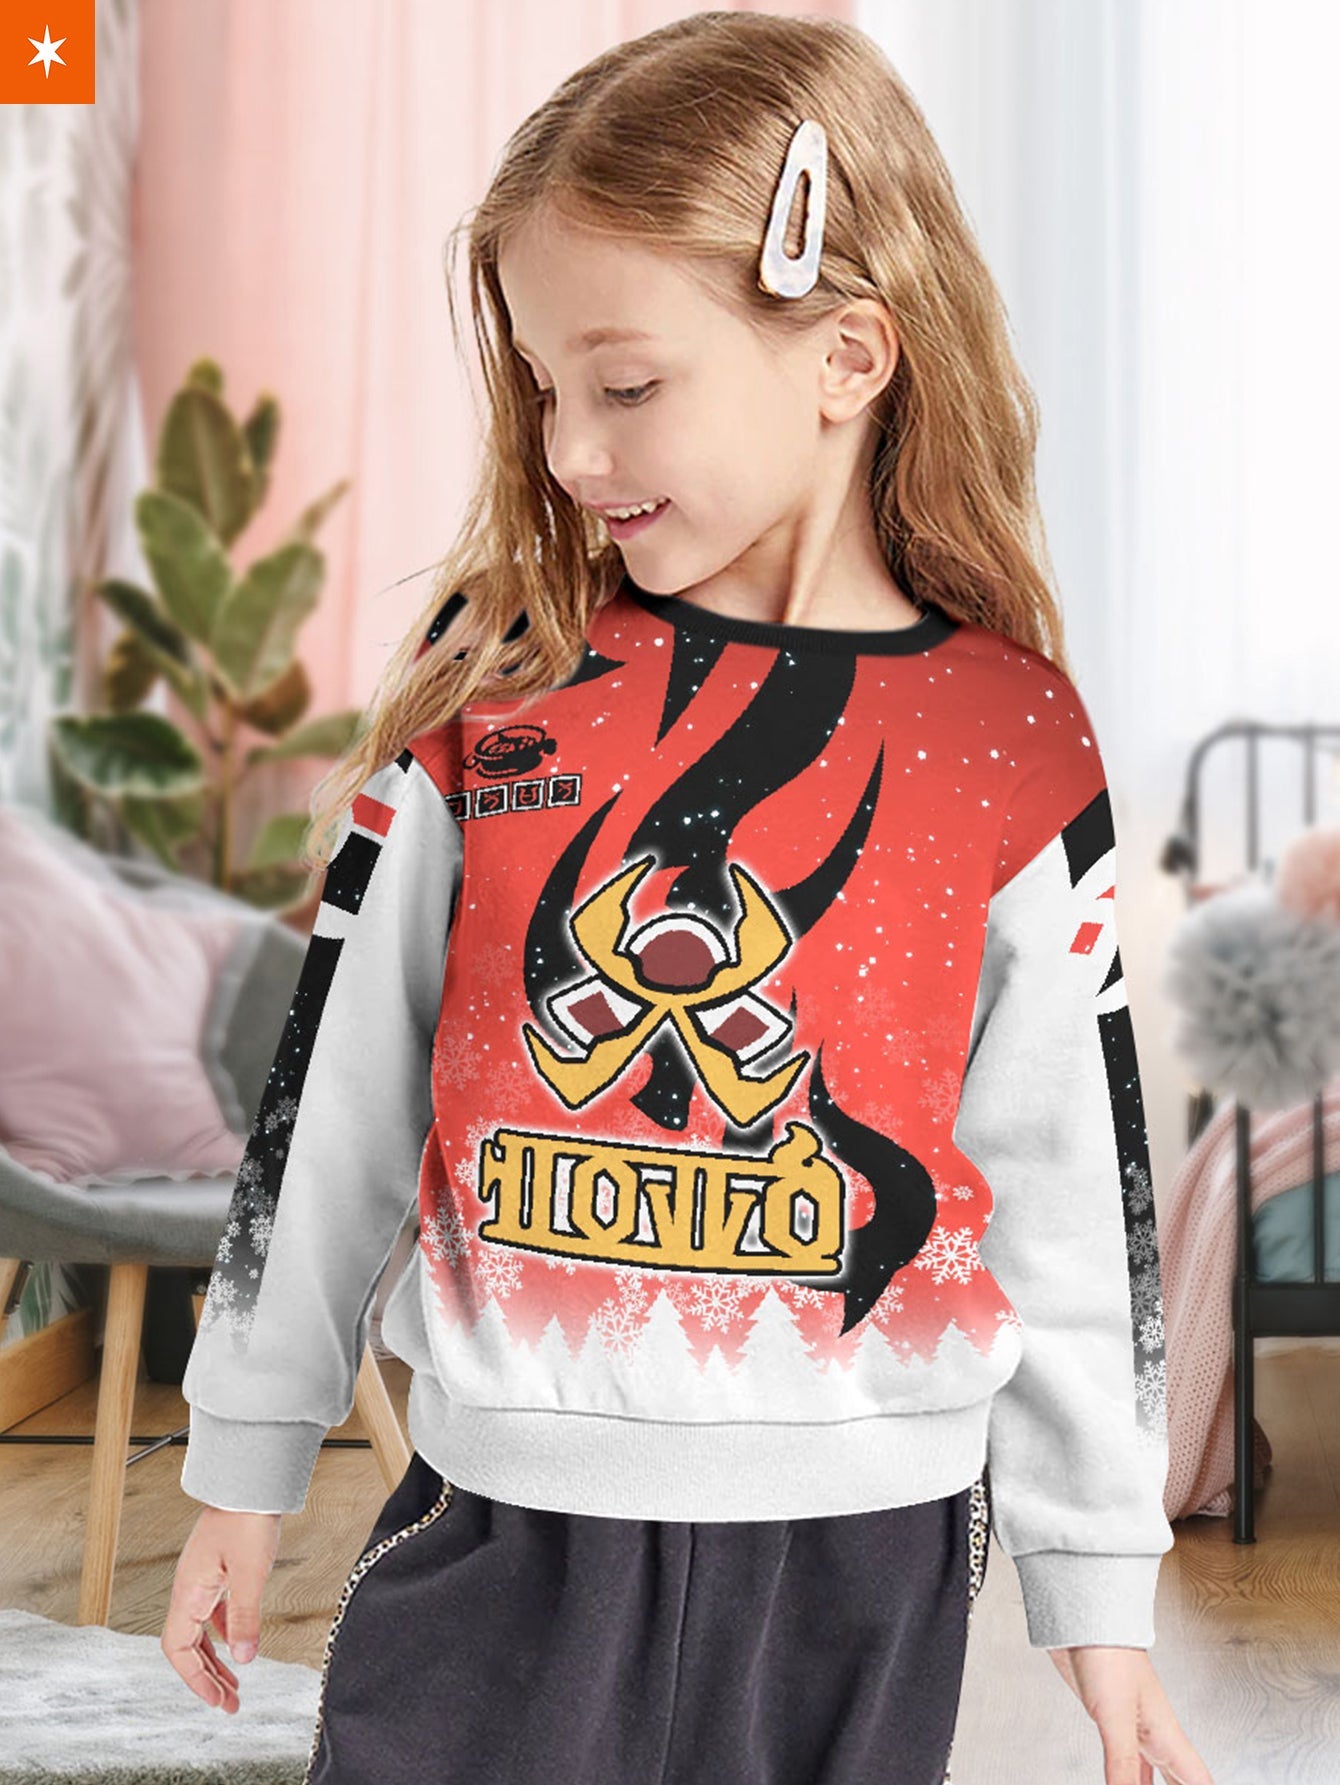 Fandomaniax - Personalized Pokemon Fire Uniform Kids Unisex Wool Sweater